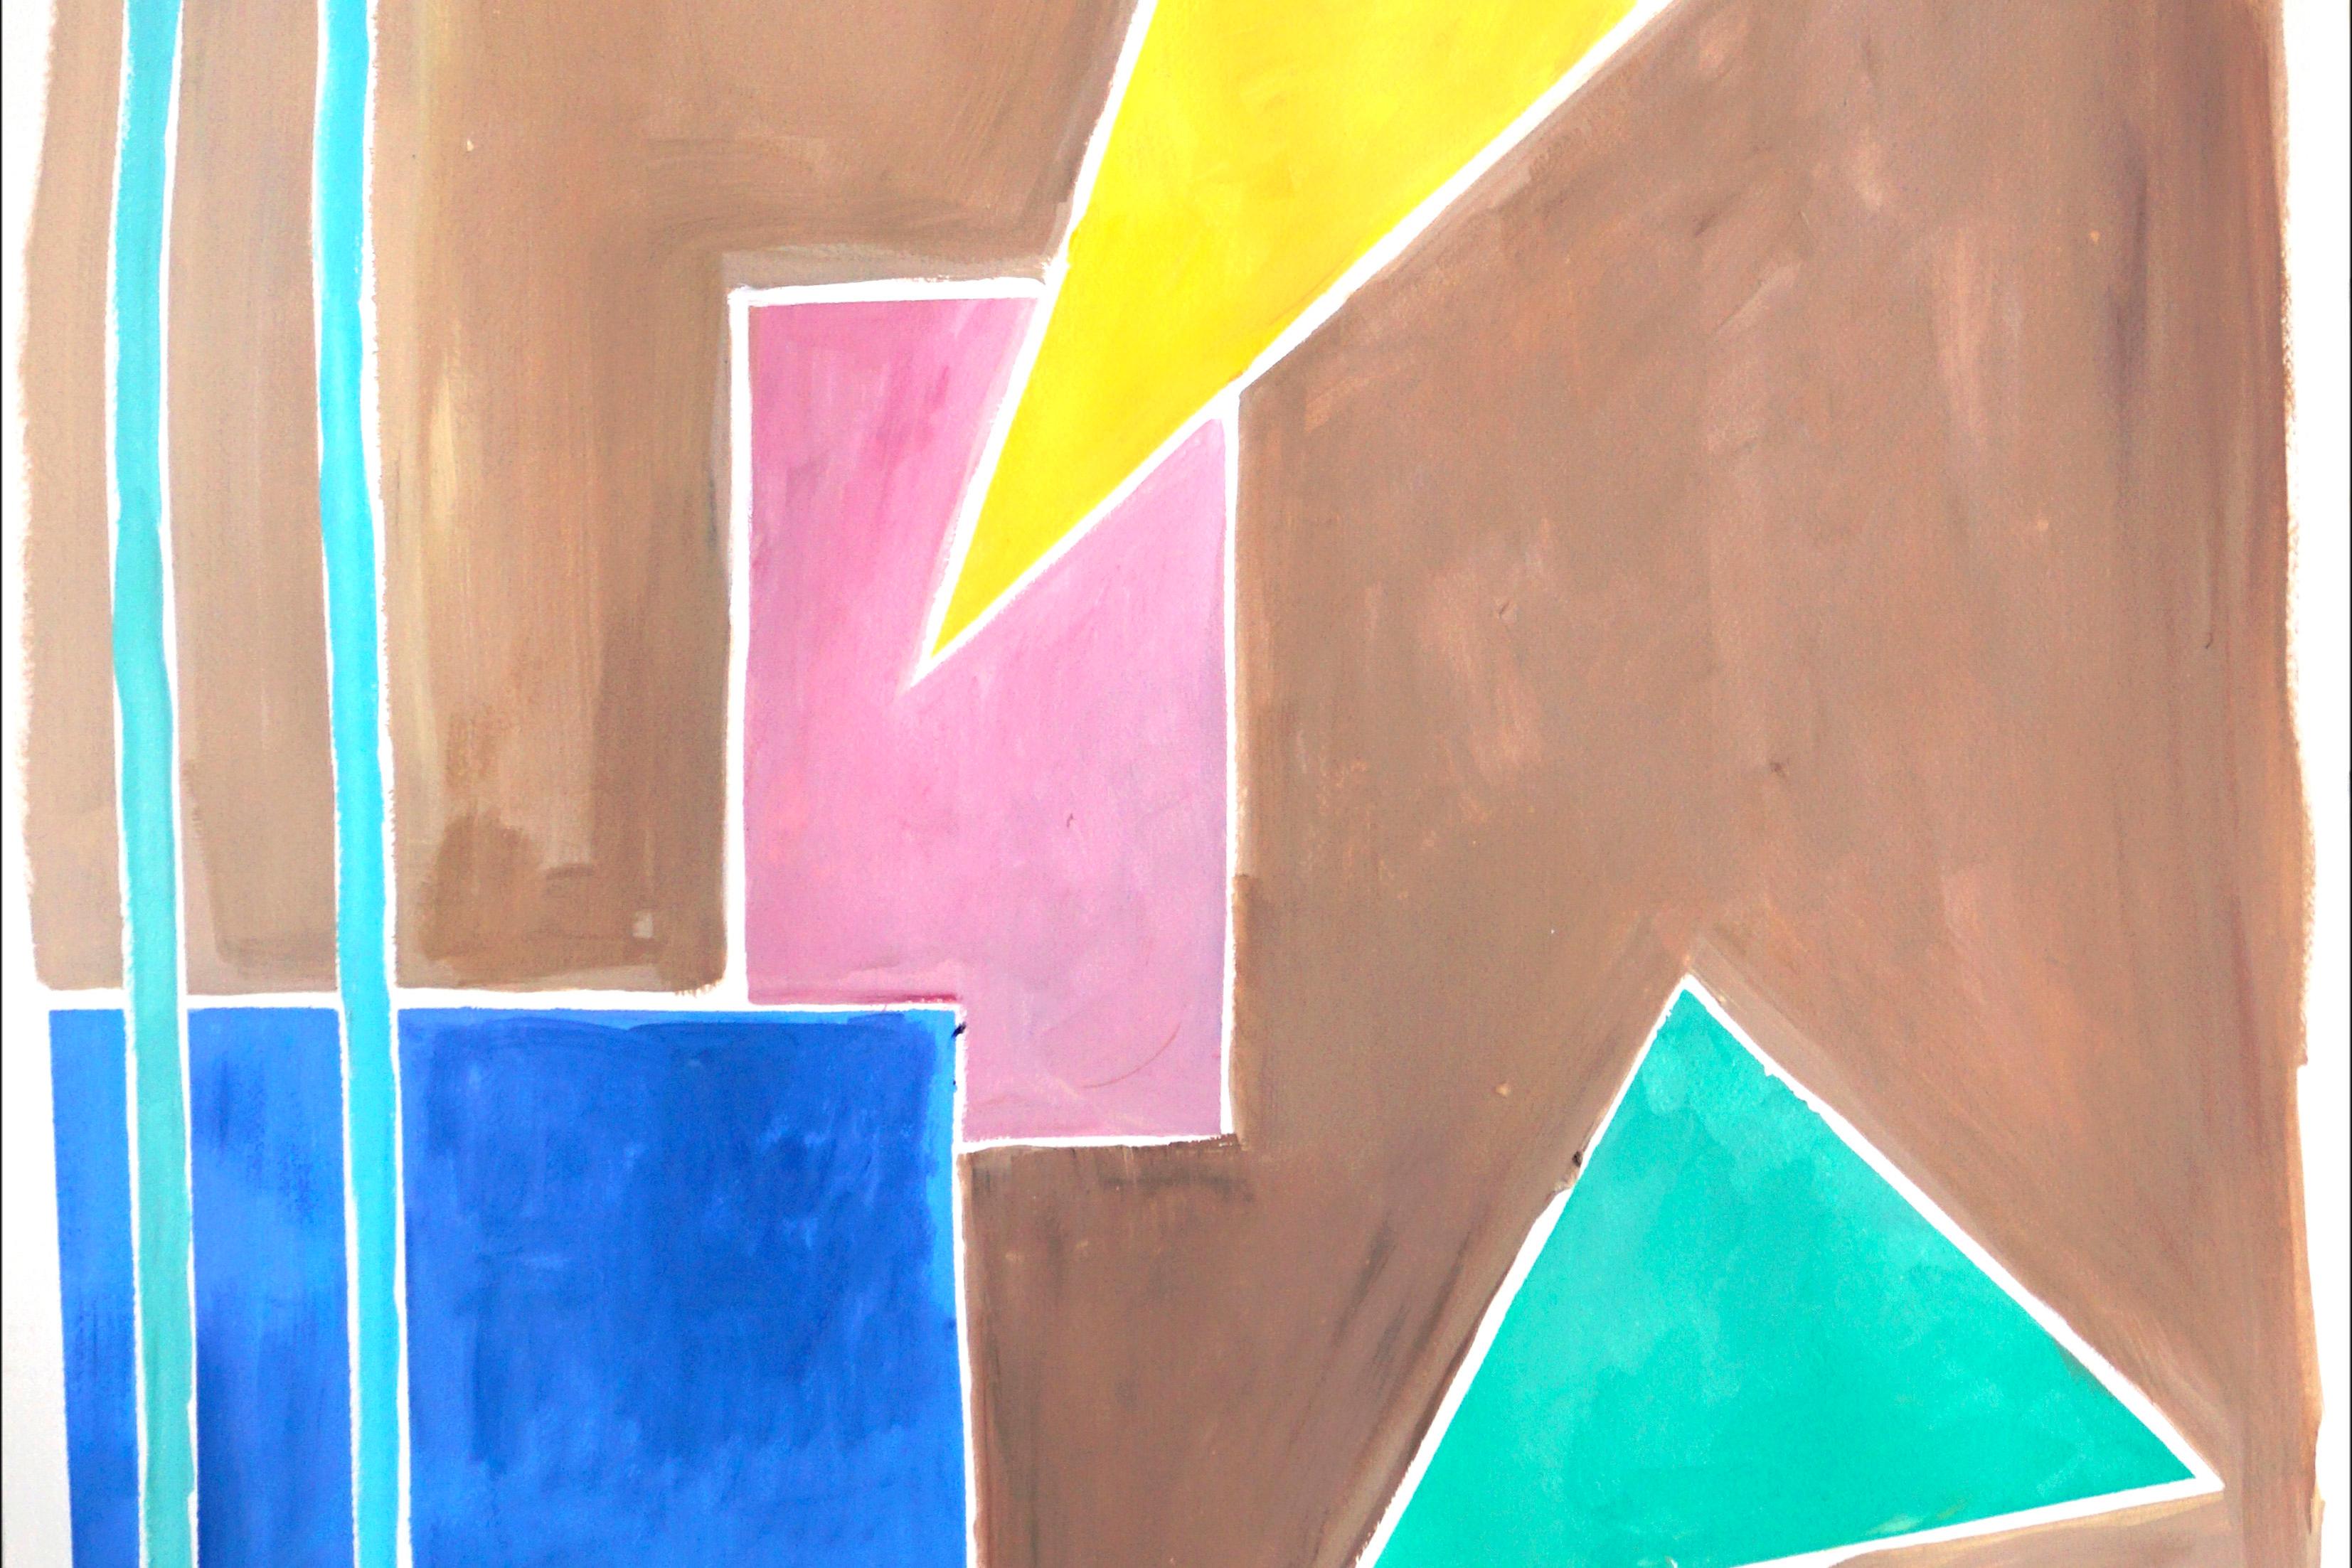 Balanced Geometrie I, Primär pastellfarbene Töne, Formen und Linien auf hellbraunem Hintergrund (Beige), Still-Life Painting, von Natalia Roman